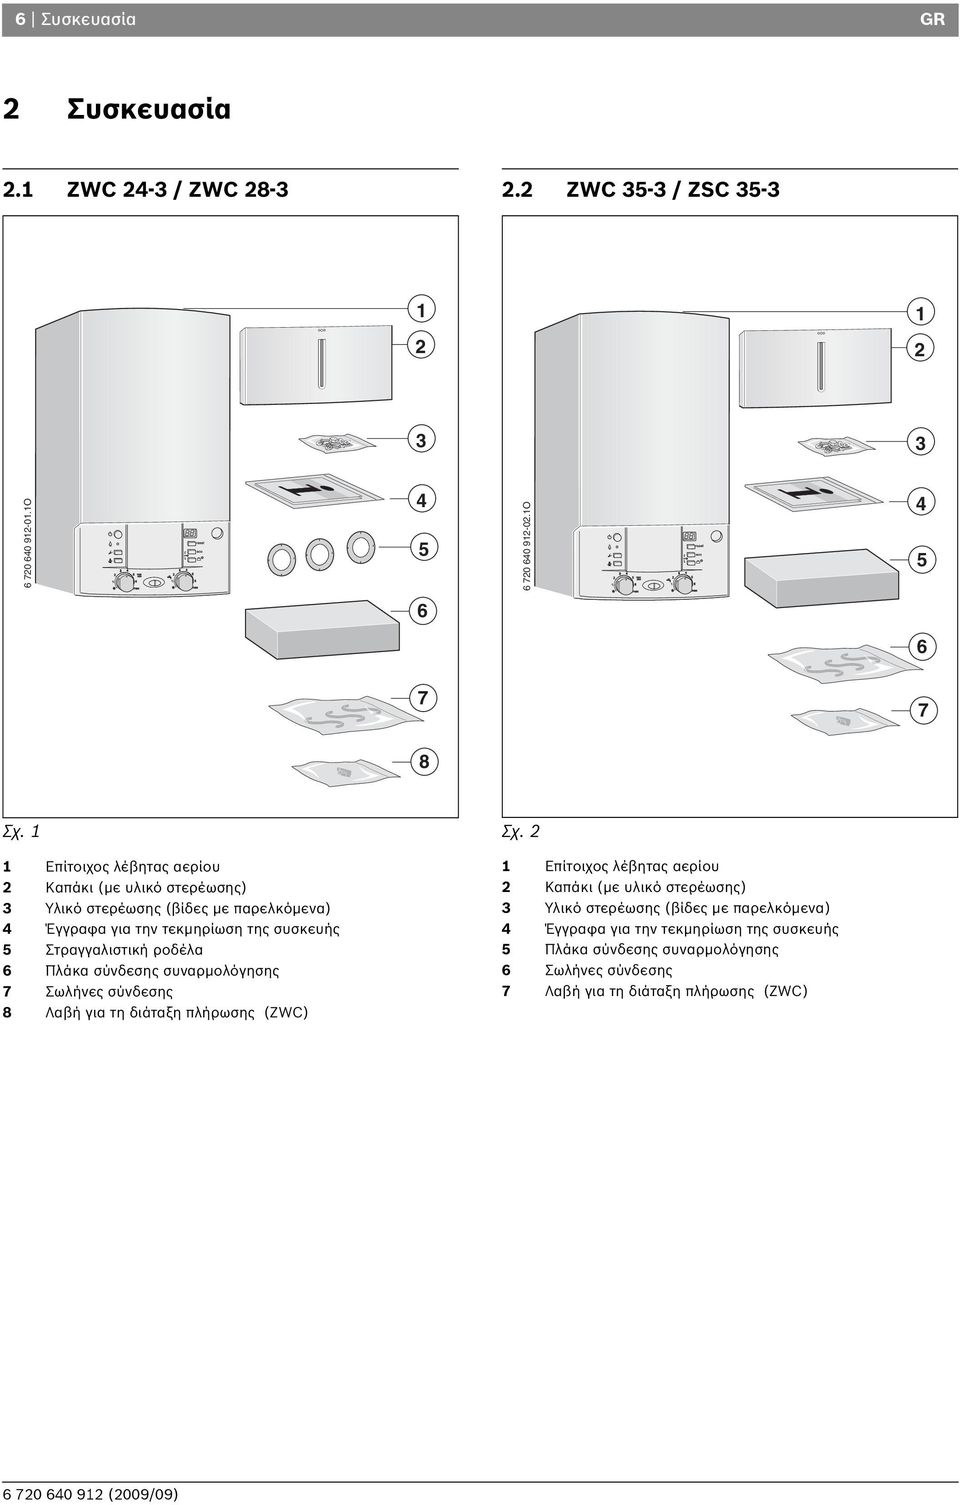 Στραγγαλιστική ροδέλα Πλάκα σύνδεσης συναρμολόγησης 7 Σωλήνες σύνδεσης 8 Λαβή για τη διάταξη πλήρωσης (ZWC) Επίτοιχος λέβητας αερίου Καπάκι (με